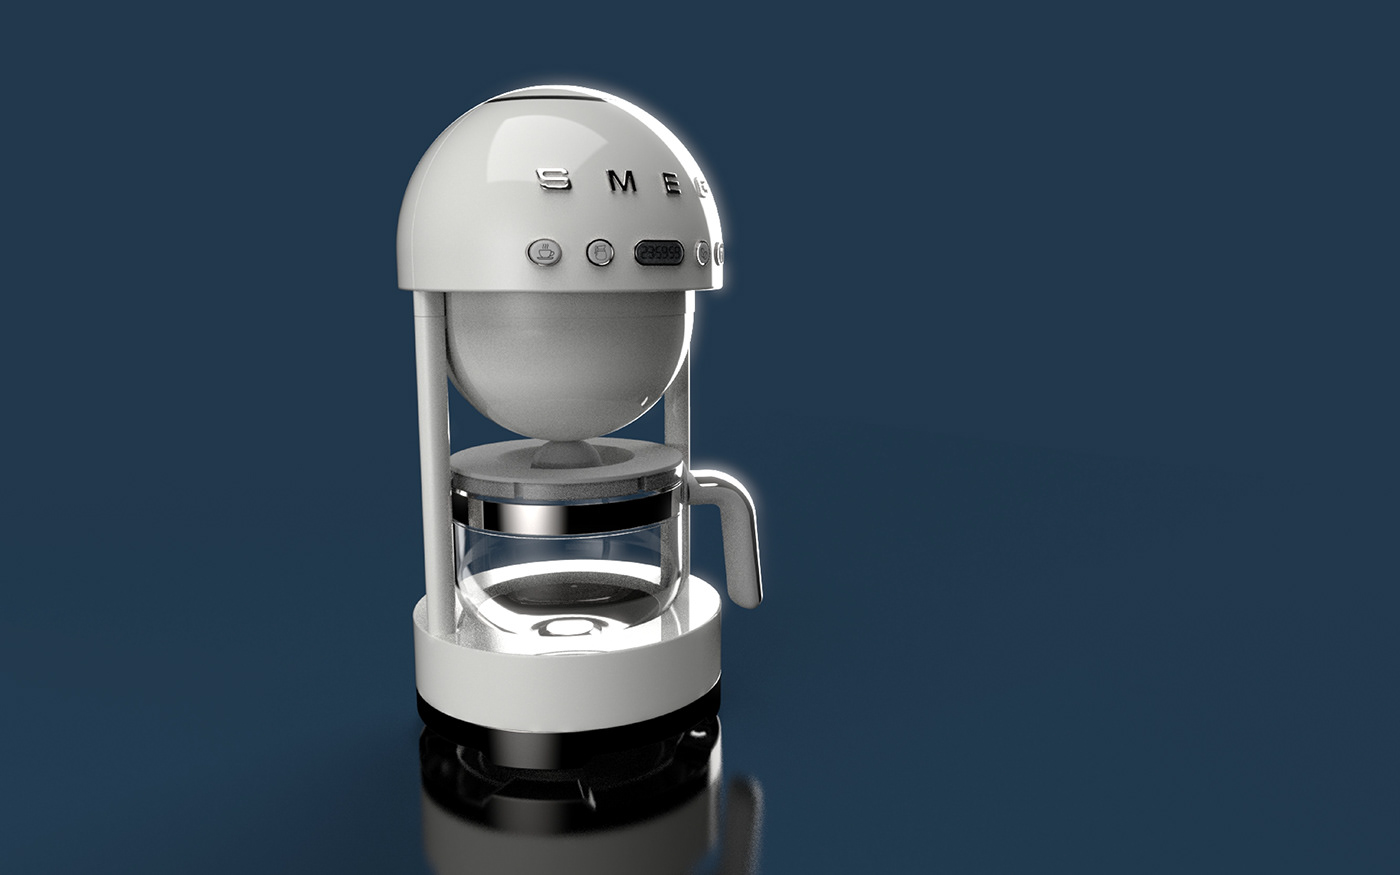 Coffee coffeemaker design futuristic interior design  kitchen MINI product design  Render